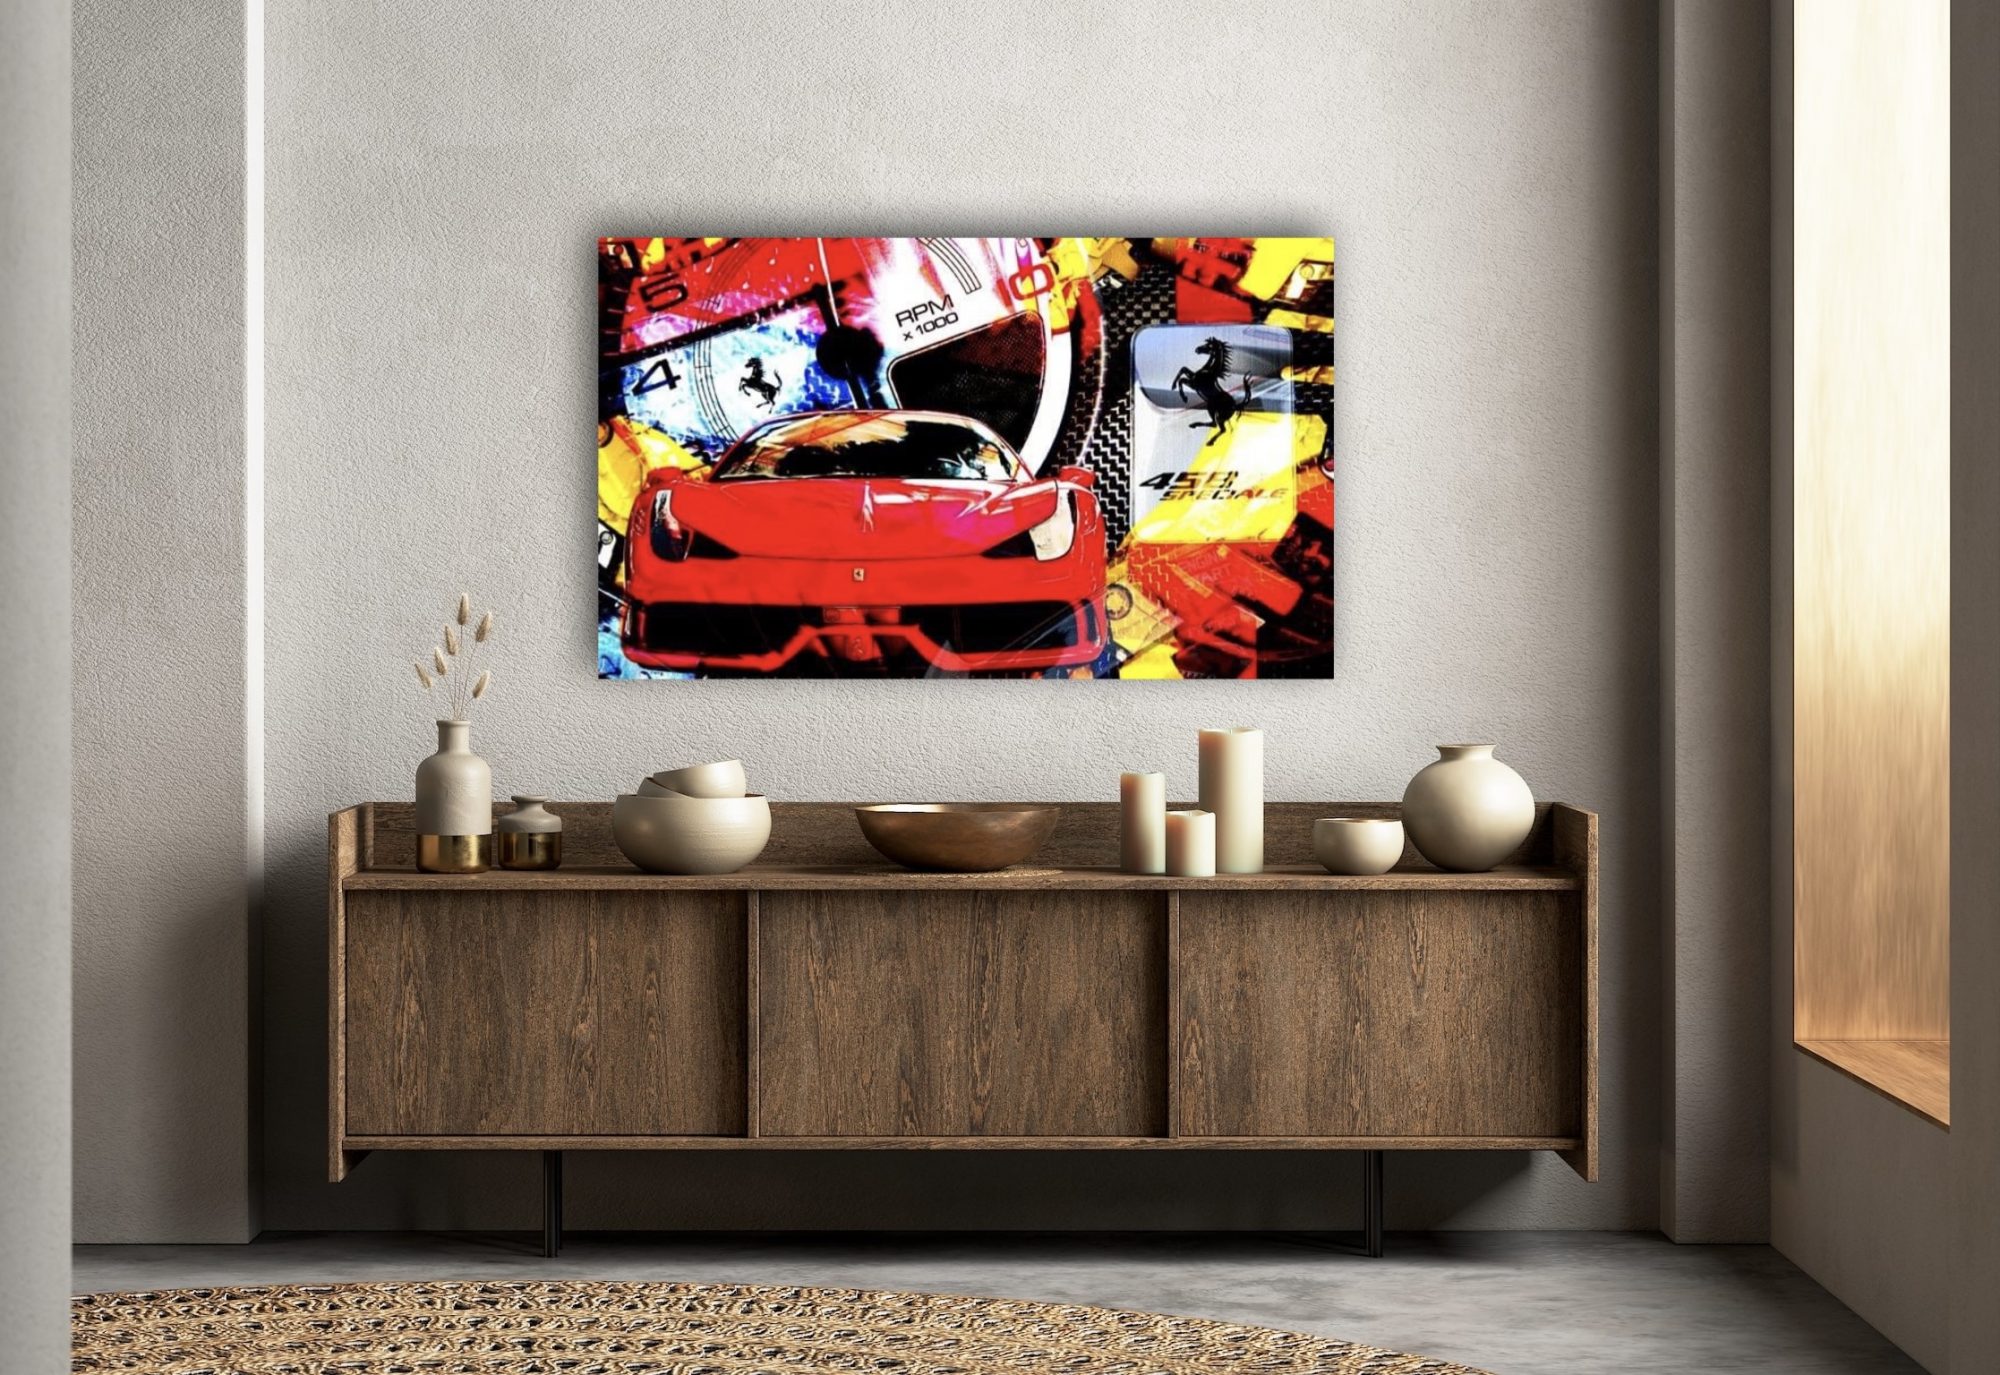 Oeuvre Ferrari 458 Speciale | artiste Caroline LLONG | sportive | art automobile | tableau Fezrrari